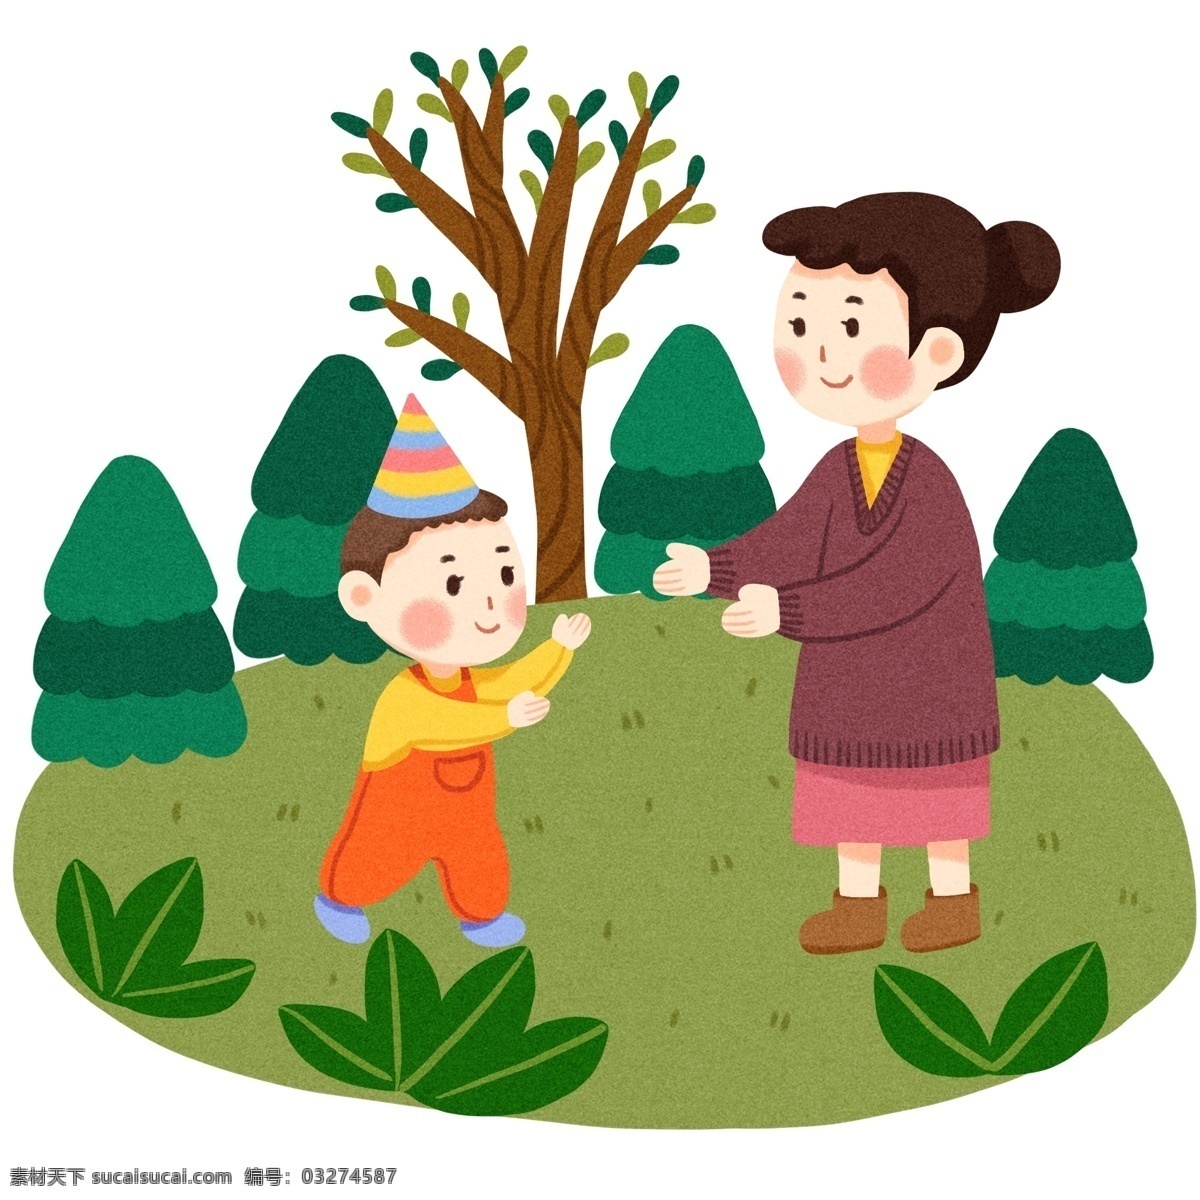 婴儿 手绘 插画 卡通 漂亮的小孩 卡通的小孩 手绘小孩 漂亮的妈妈 彩色的帽子 绿色的树叶 婴儿插画